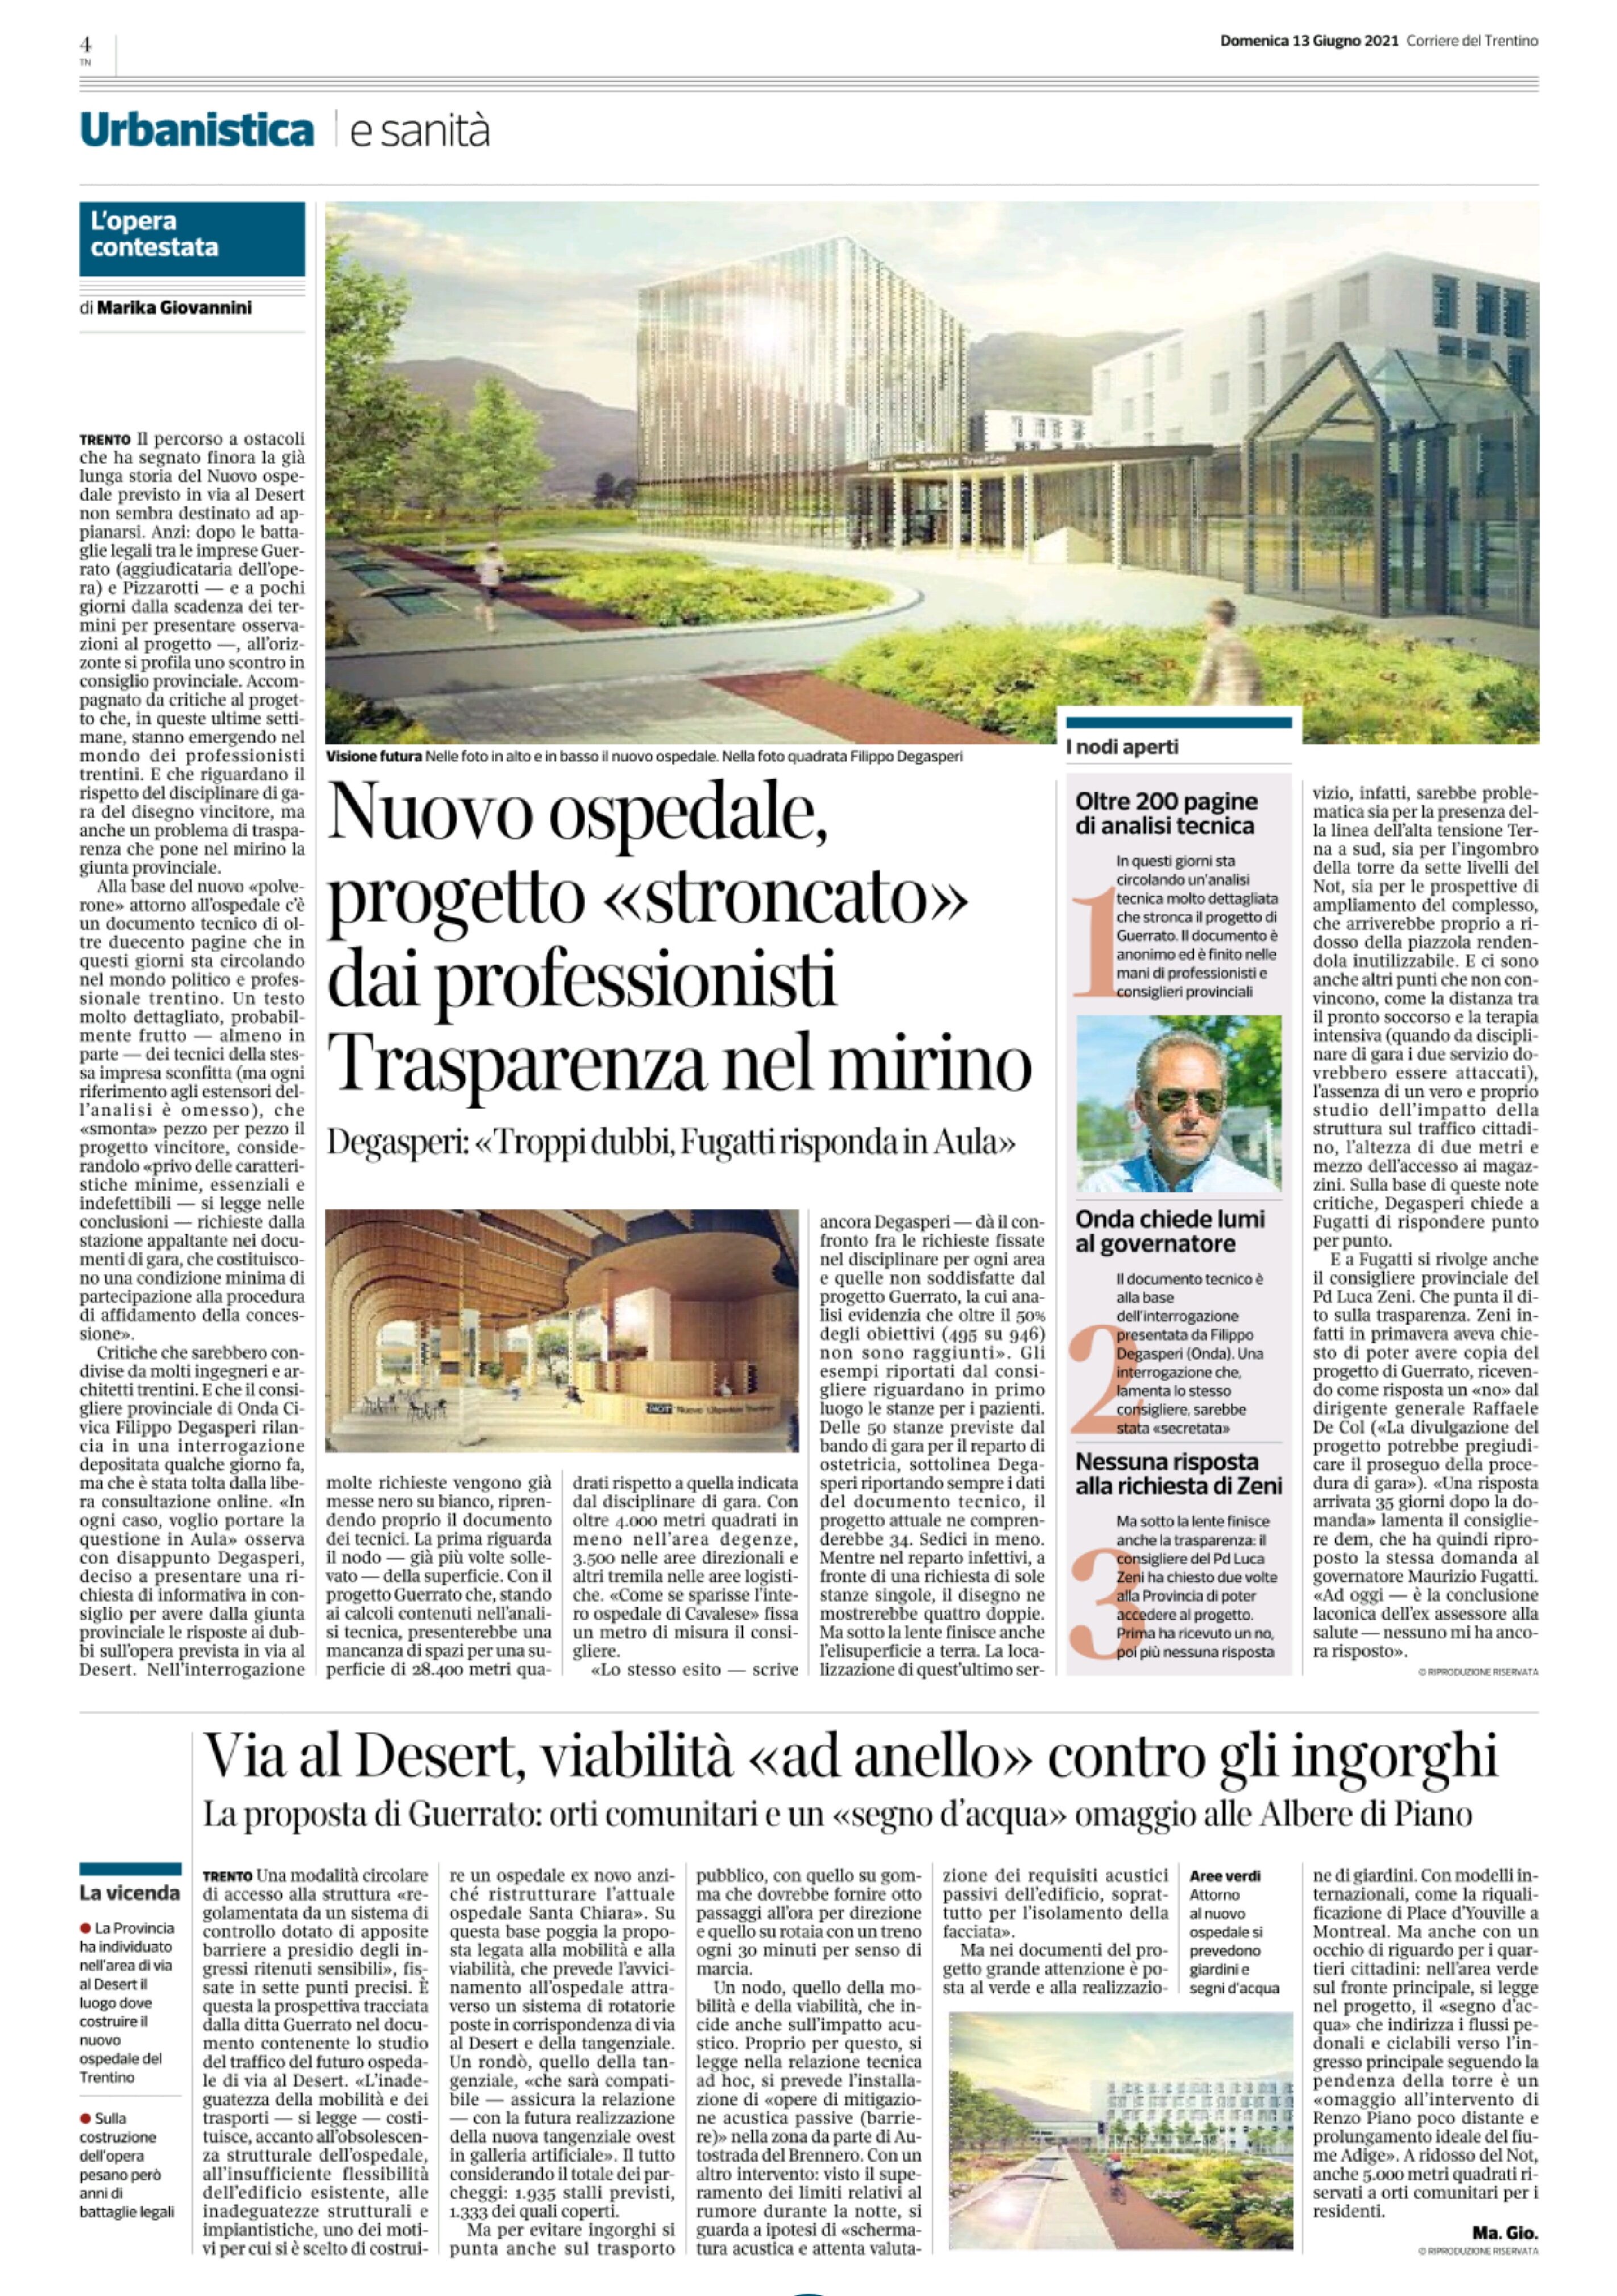 Trento, nuovo ospedale: progetto stroncato dai professionisti. Trasparenza nel mirino